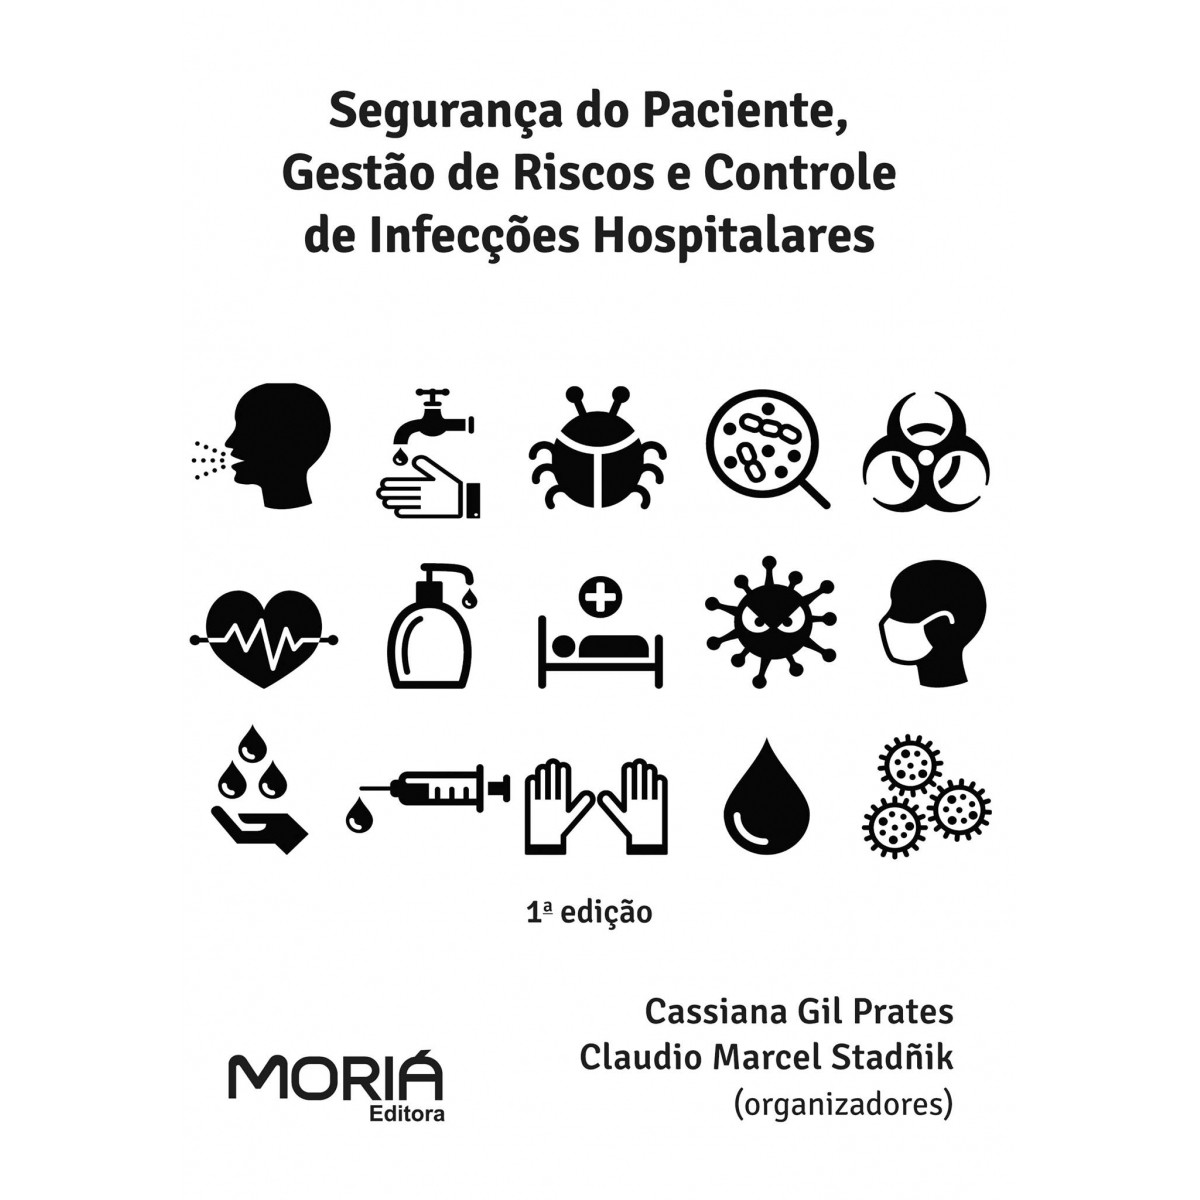 Segurança do paciente, gestão de riscos e controle de infecções hospitalares.